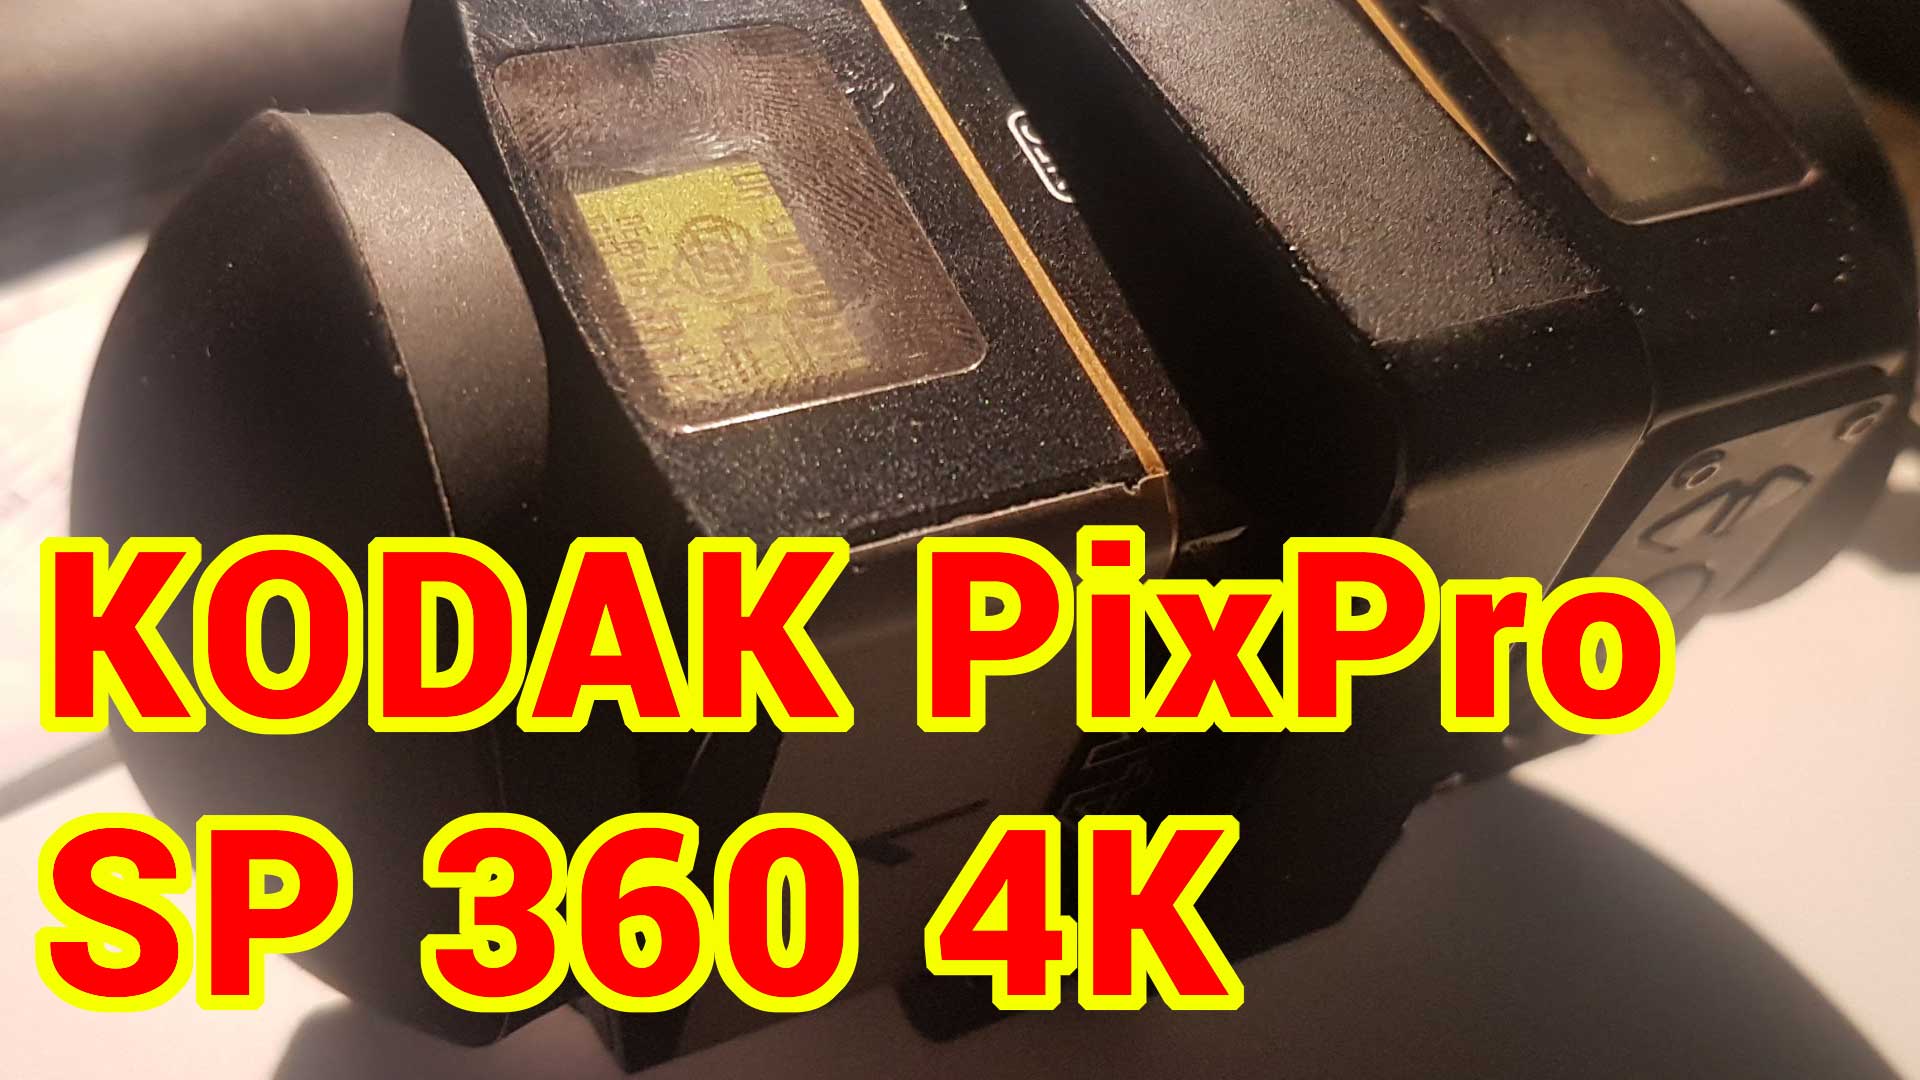 KODAK PixPro SP360 4K